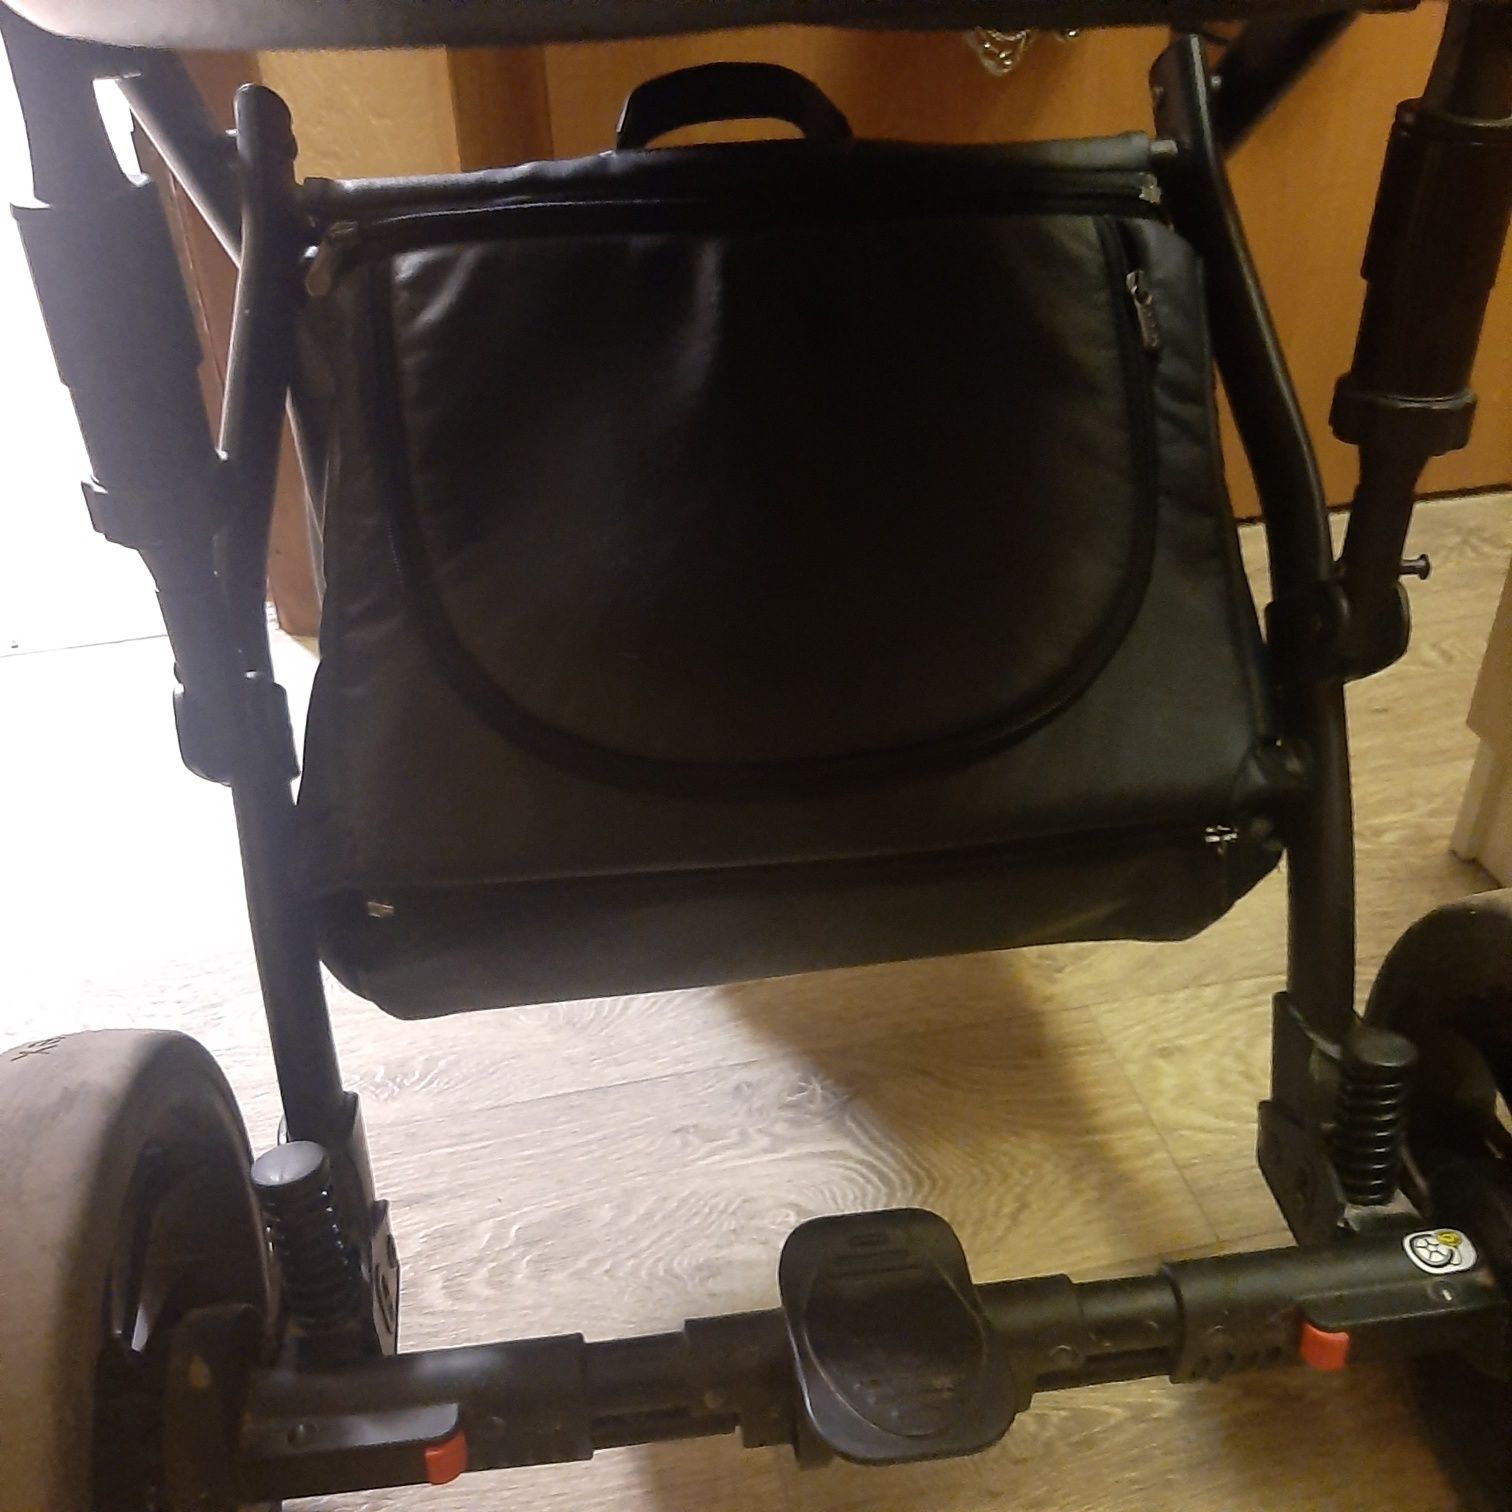 Продам коляску для новорожденных